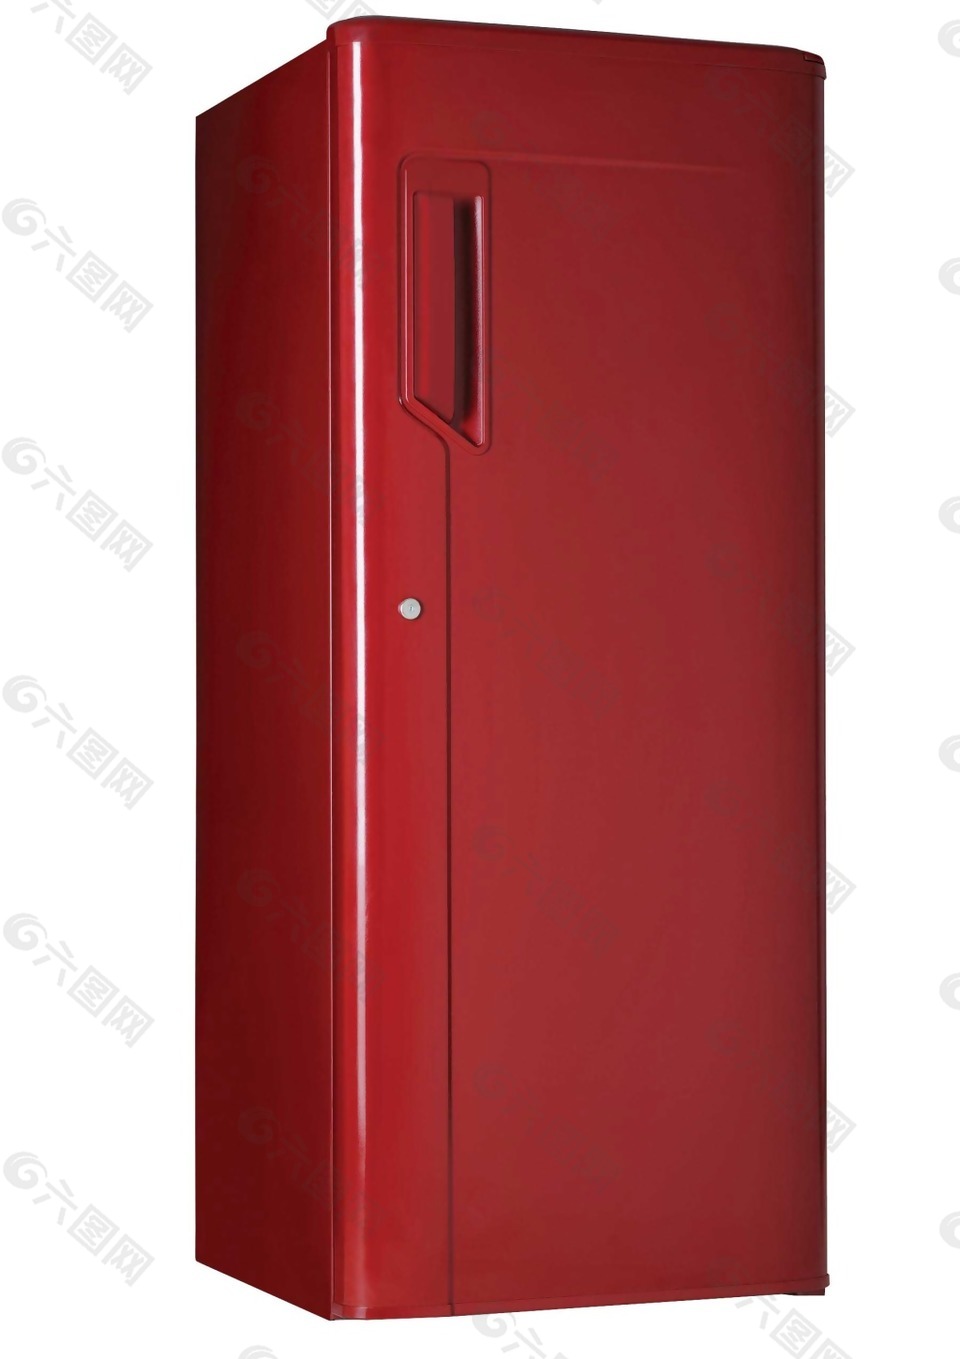 红色大冰箱png元素